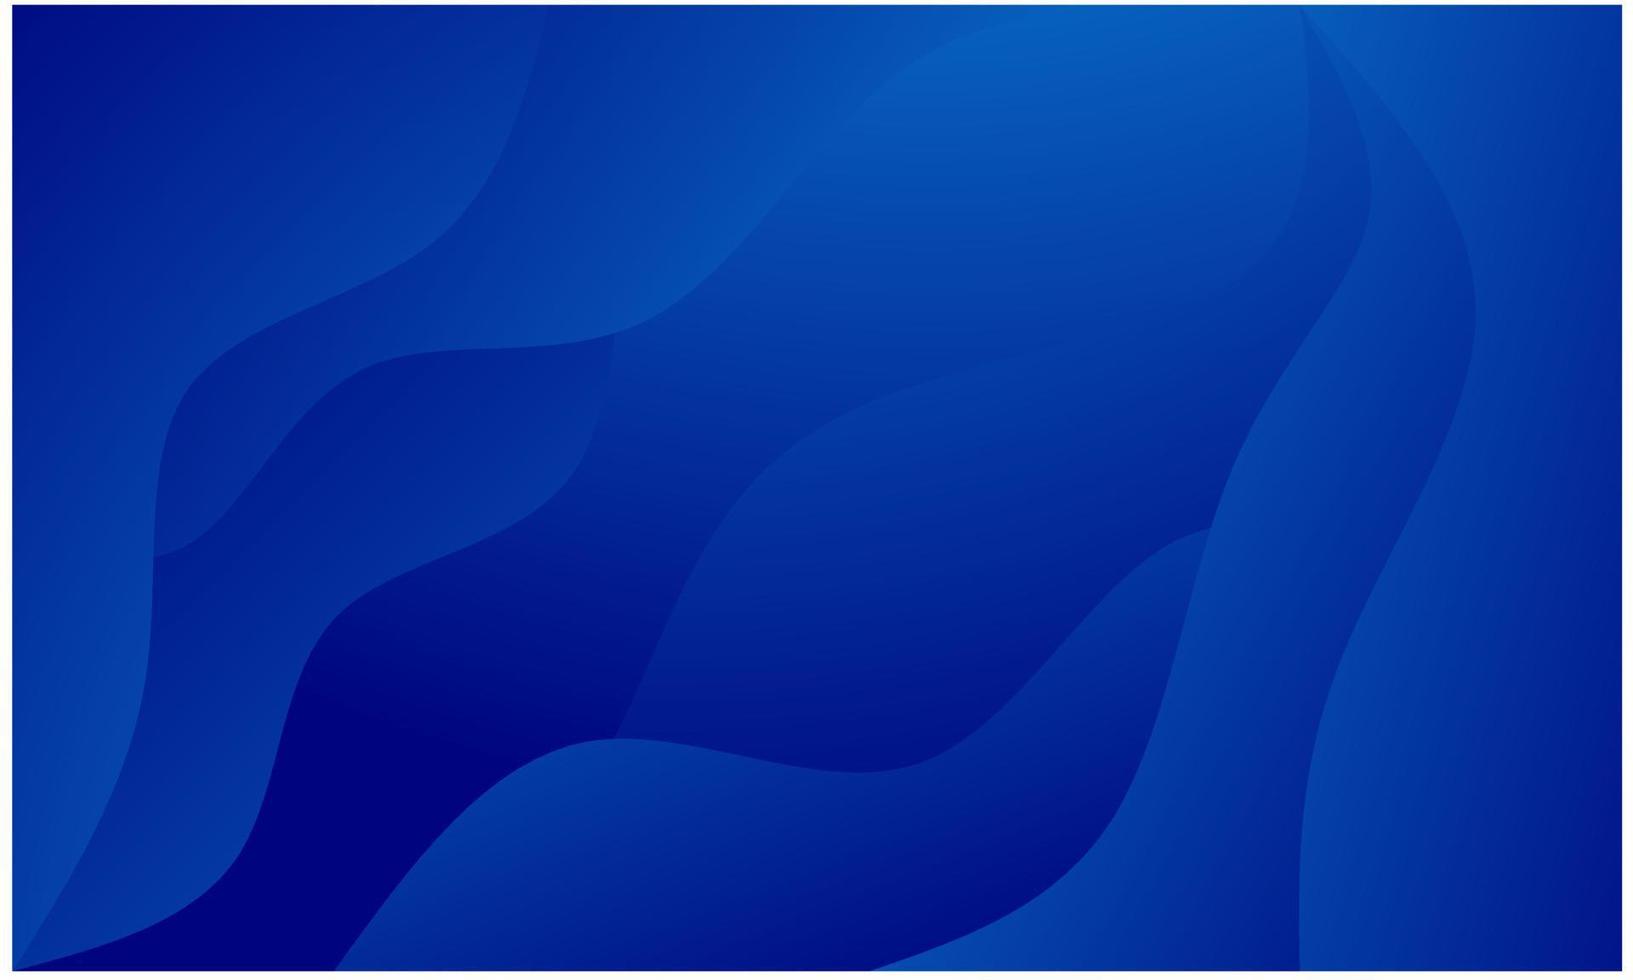 fondo gráfico de onda moderno abstracto. fondo azul. diseño de fondo de vector de onda abstracta, cartel oscuro, ilustración de vector de fondo azul.